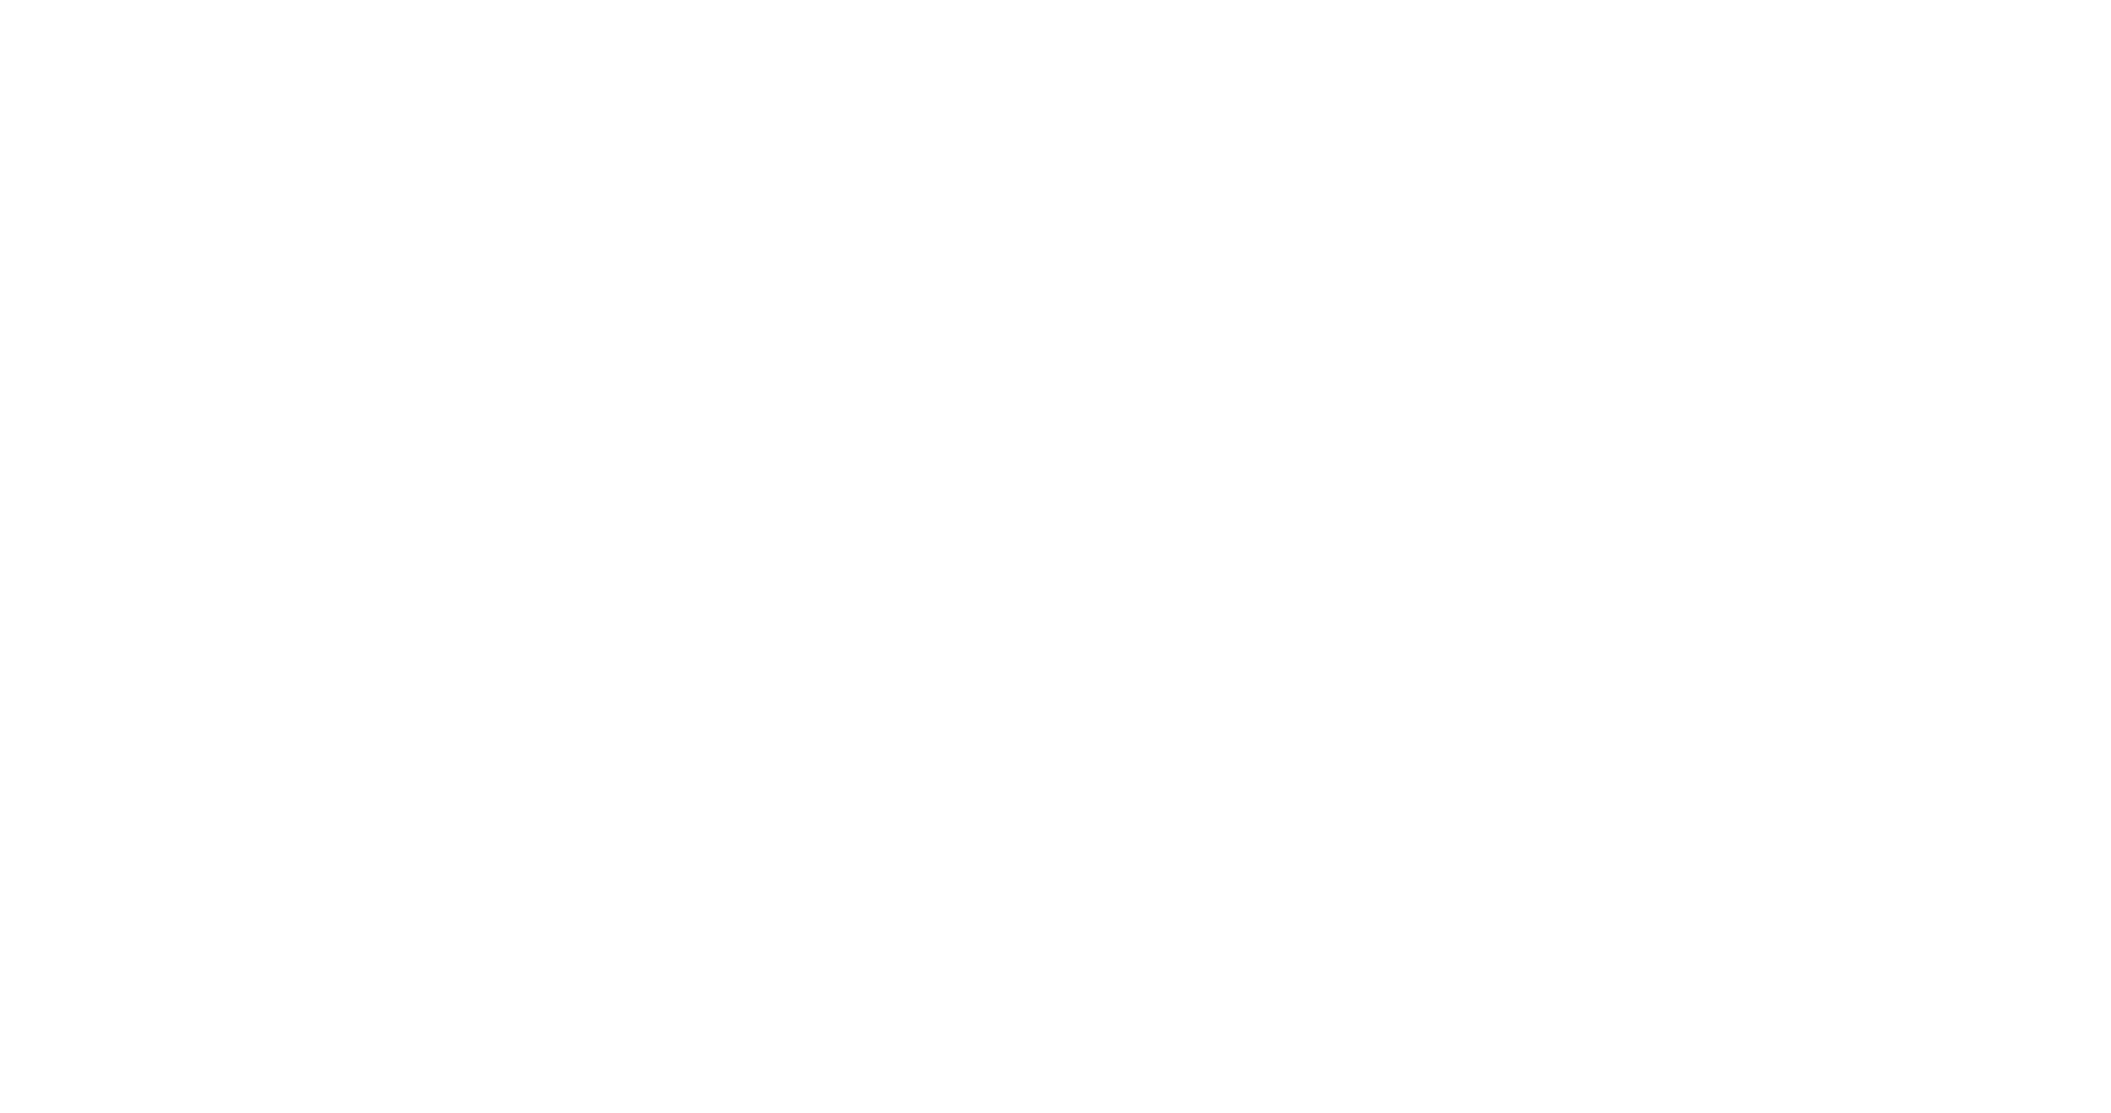 Therapie Hanke Logo weiss ohne Hintergrund